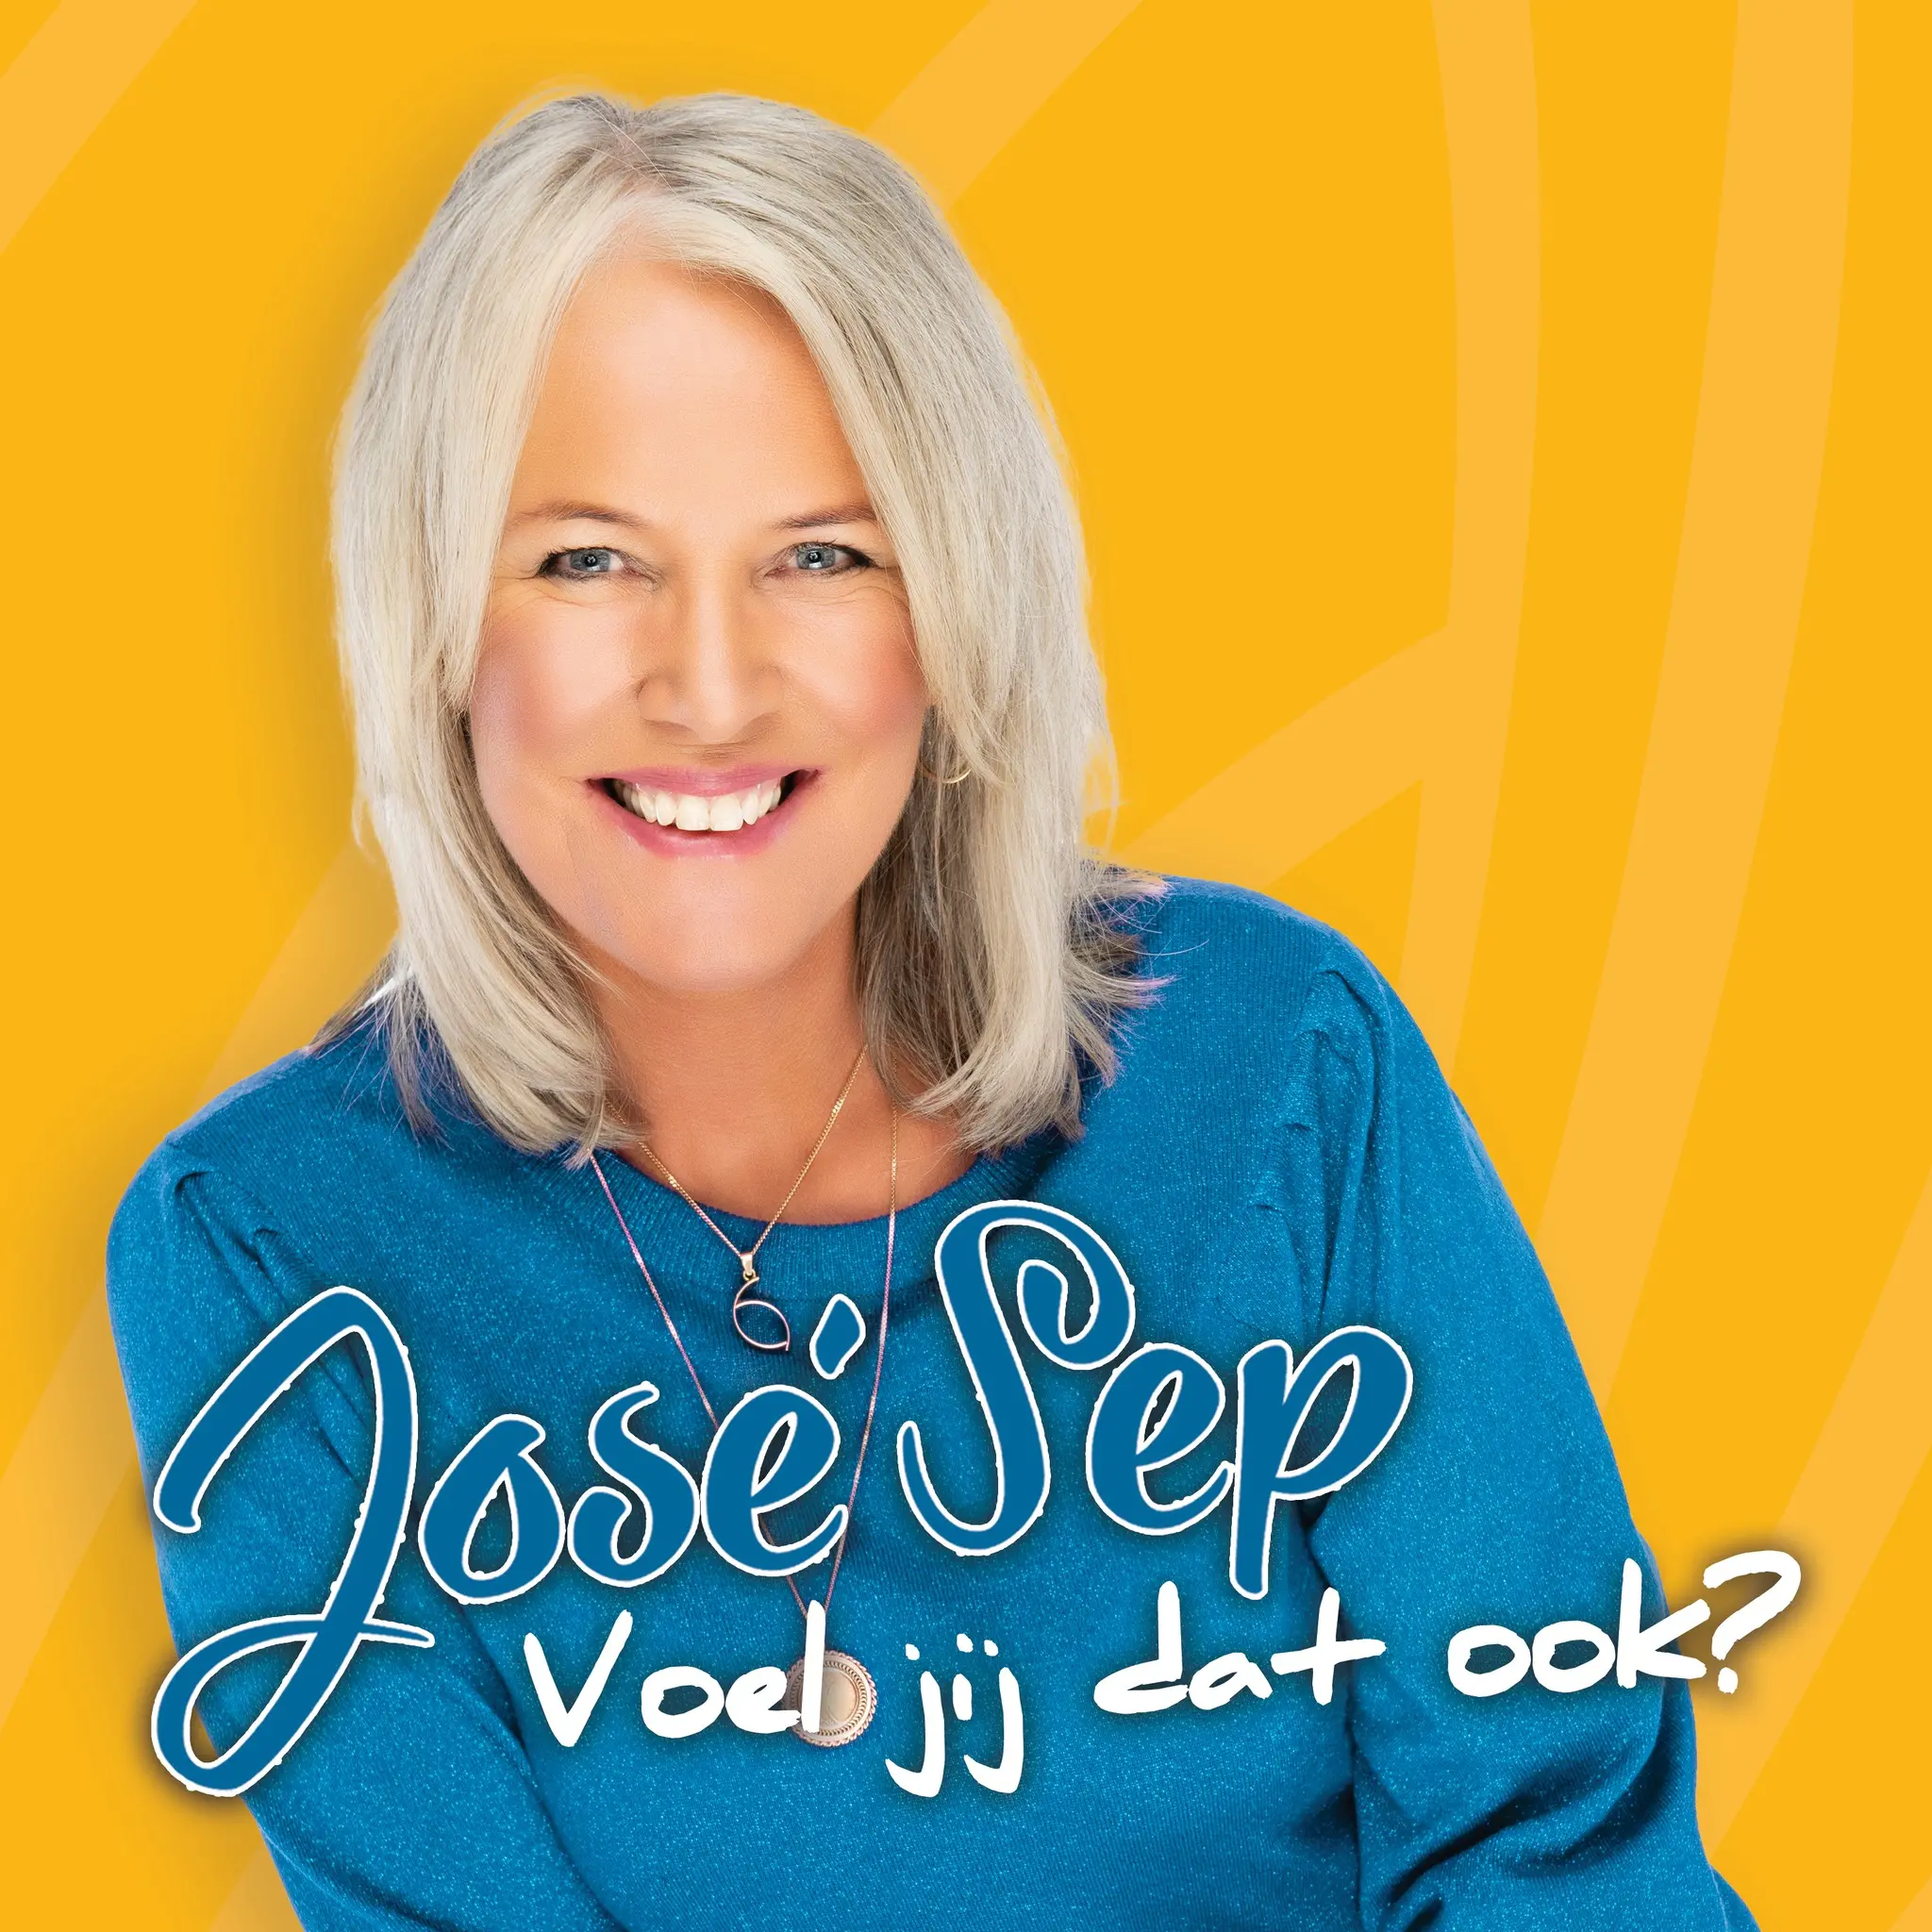 José Sep laat met nieuwe single   “Voel jij dat ook?” de zon weer schijnen!